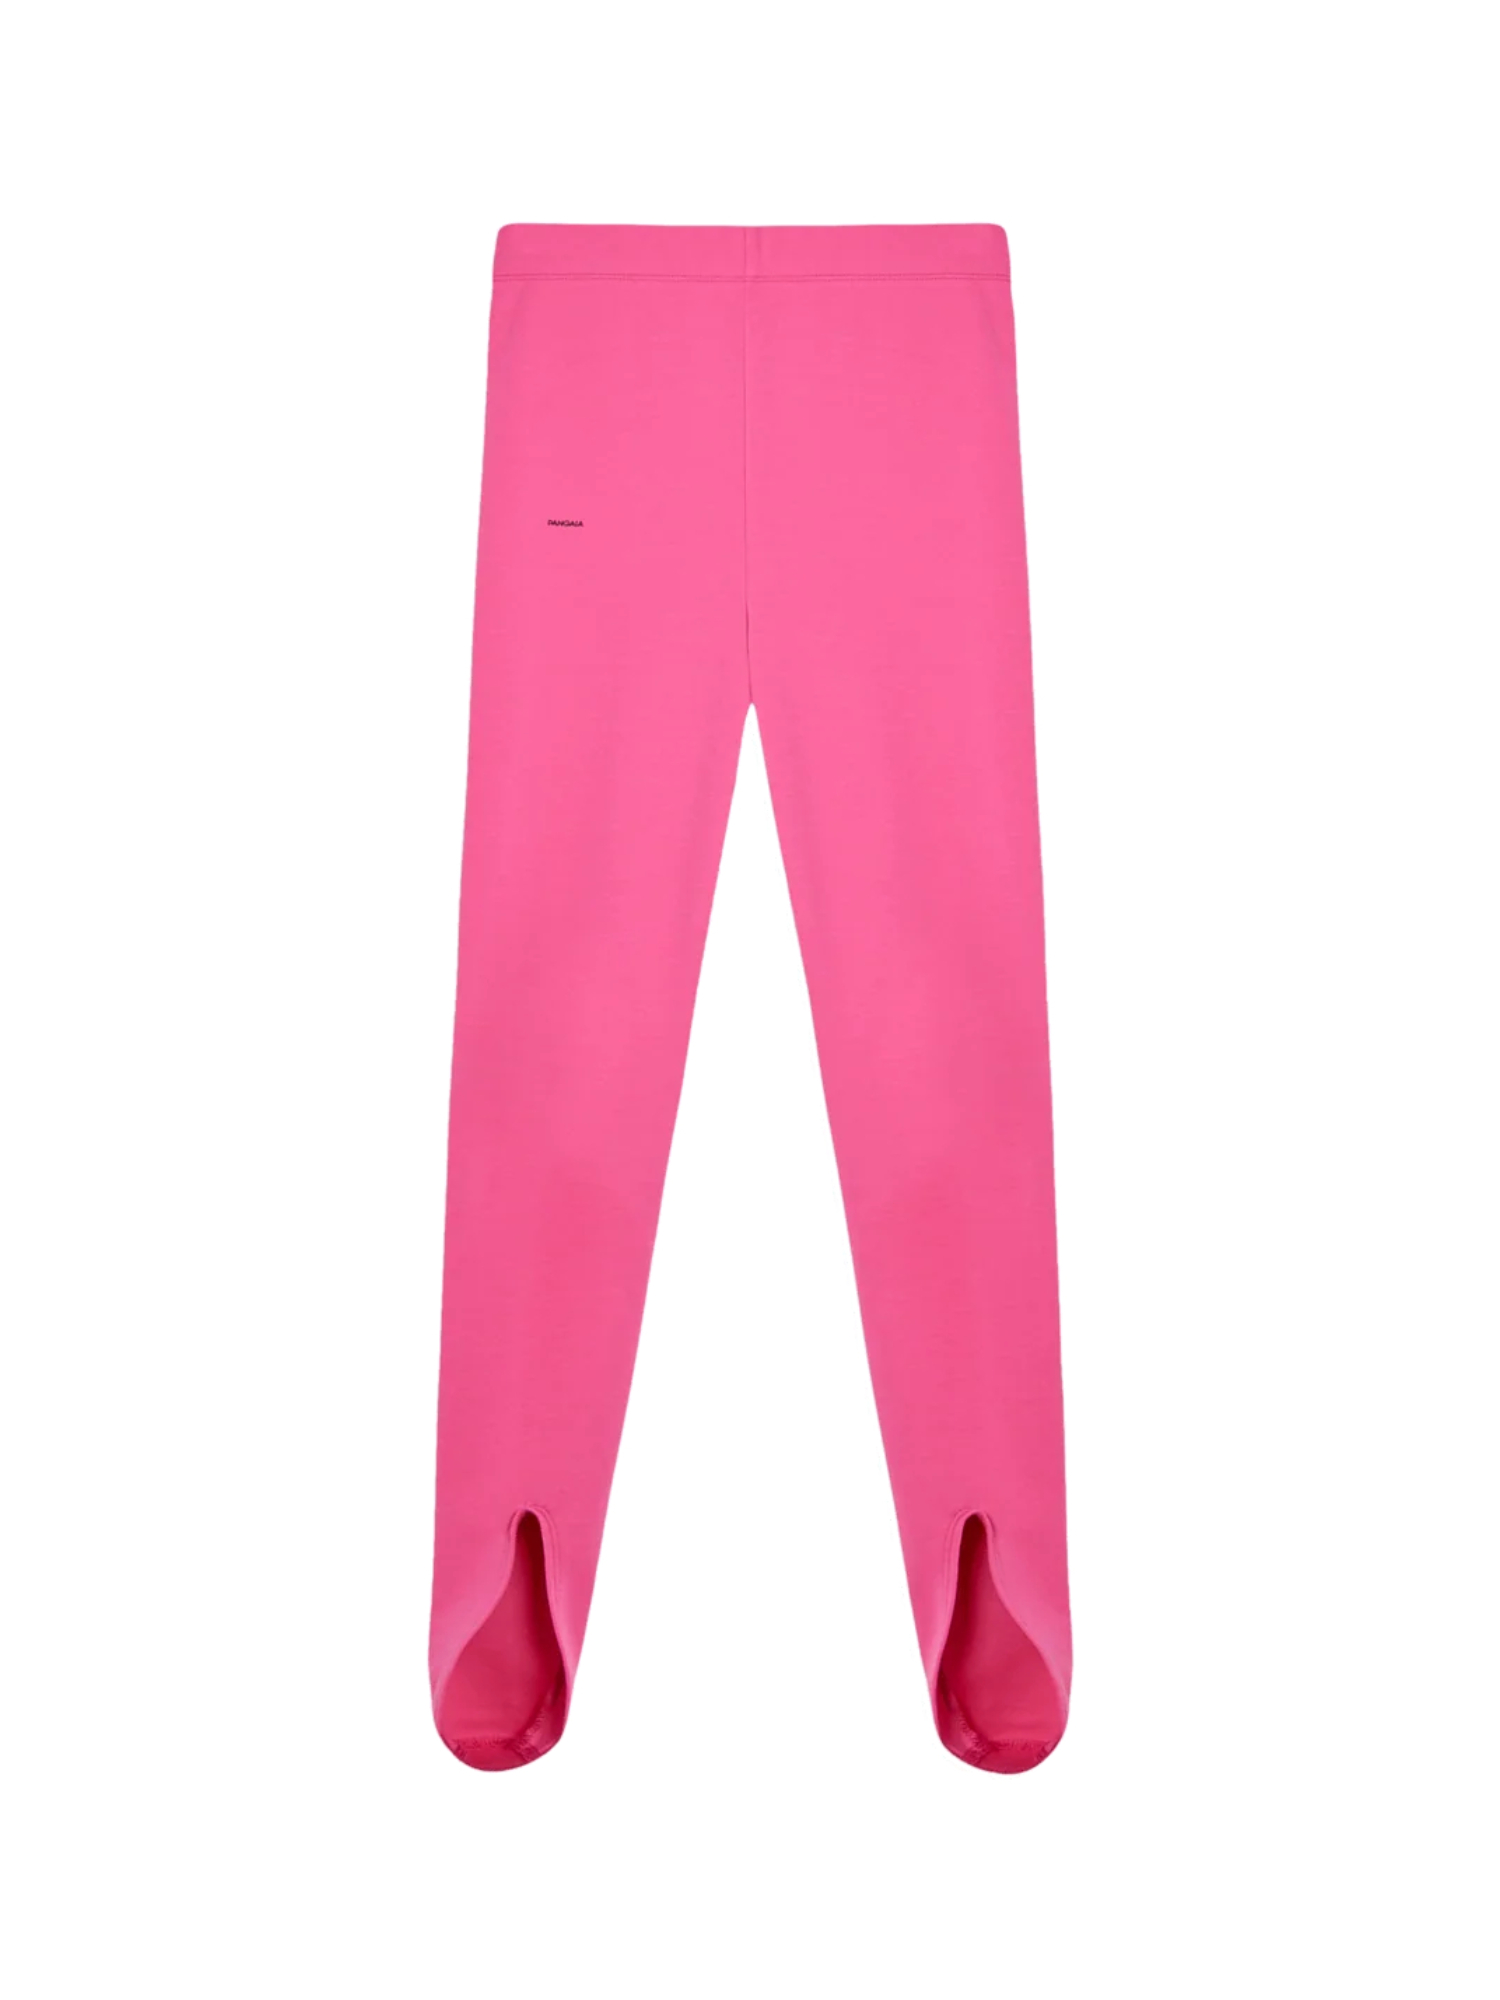 Леггинсы Pangaia Activewear для женщин, размер S, розовые